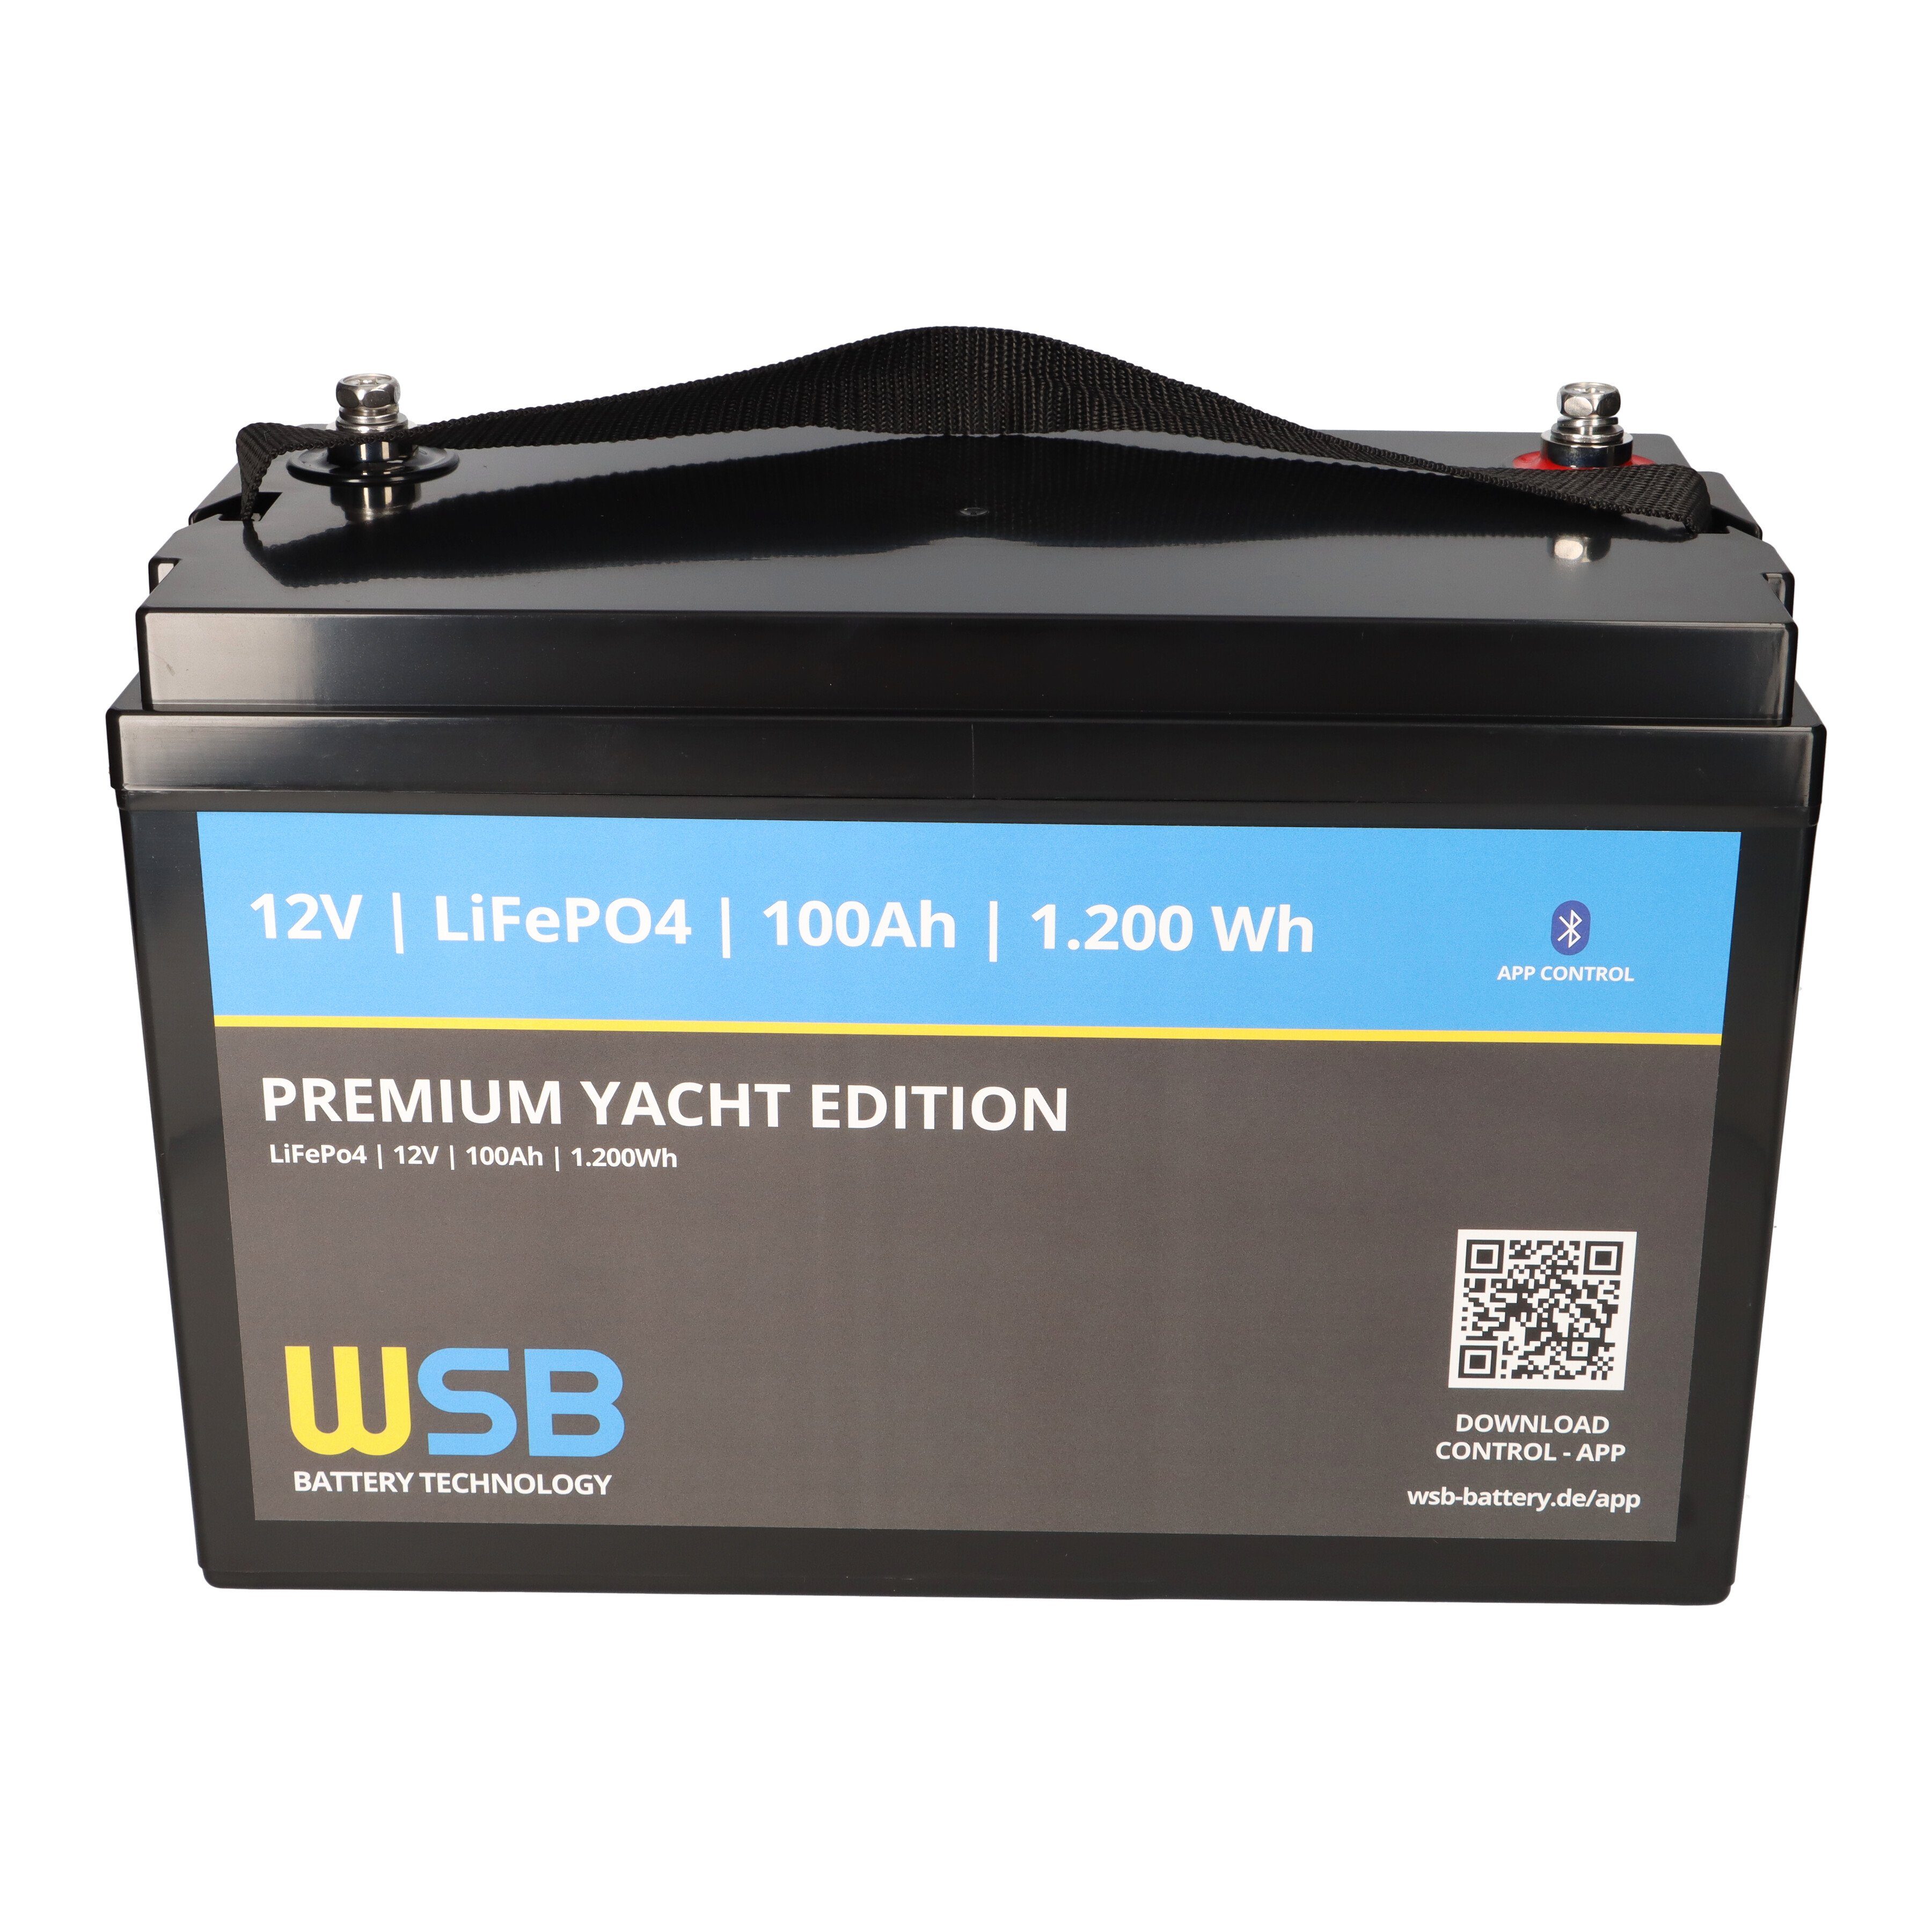 inkl. WSB LiFePO4 Akku Battery Technlology (12,8V) Bleiakkus GmbH 12V 100Ah Bluetooth (12,8V V) WSB